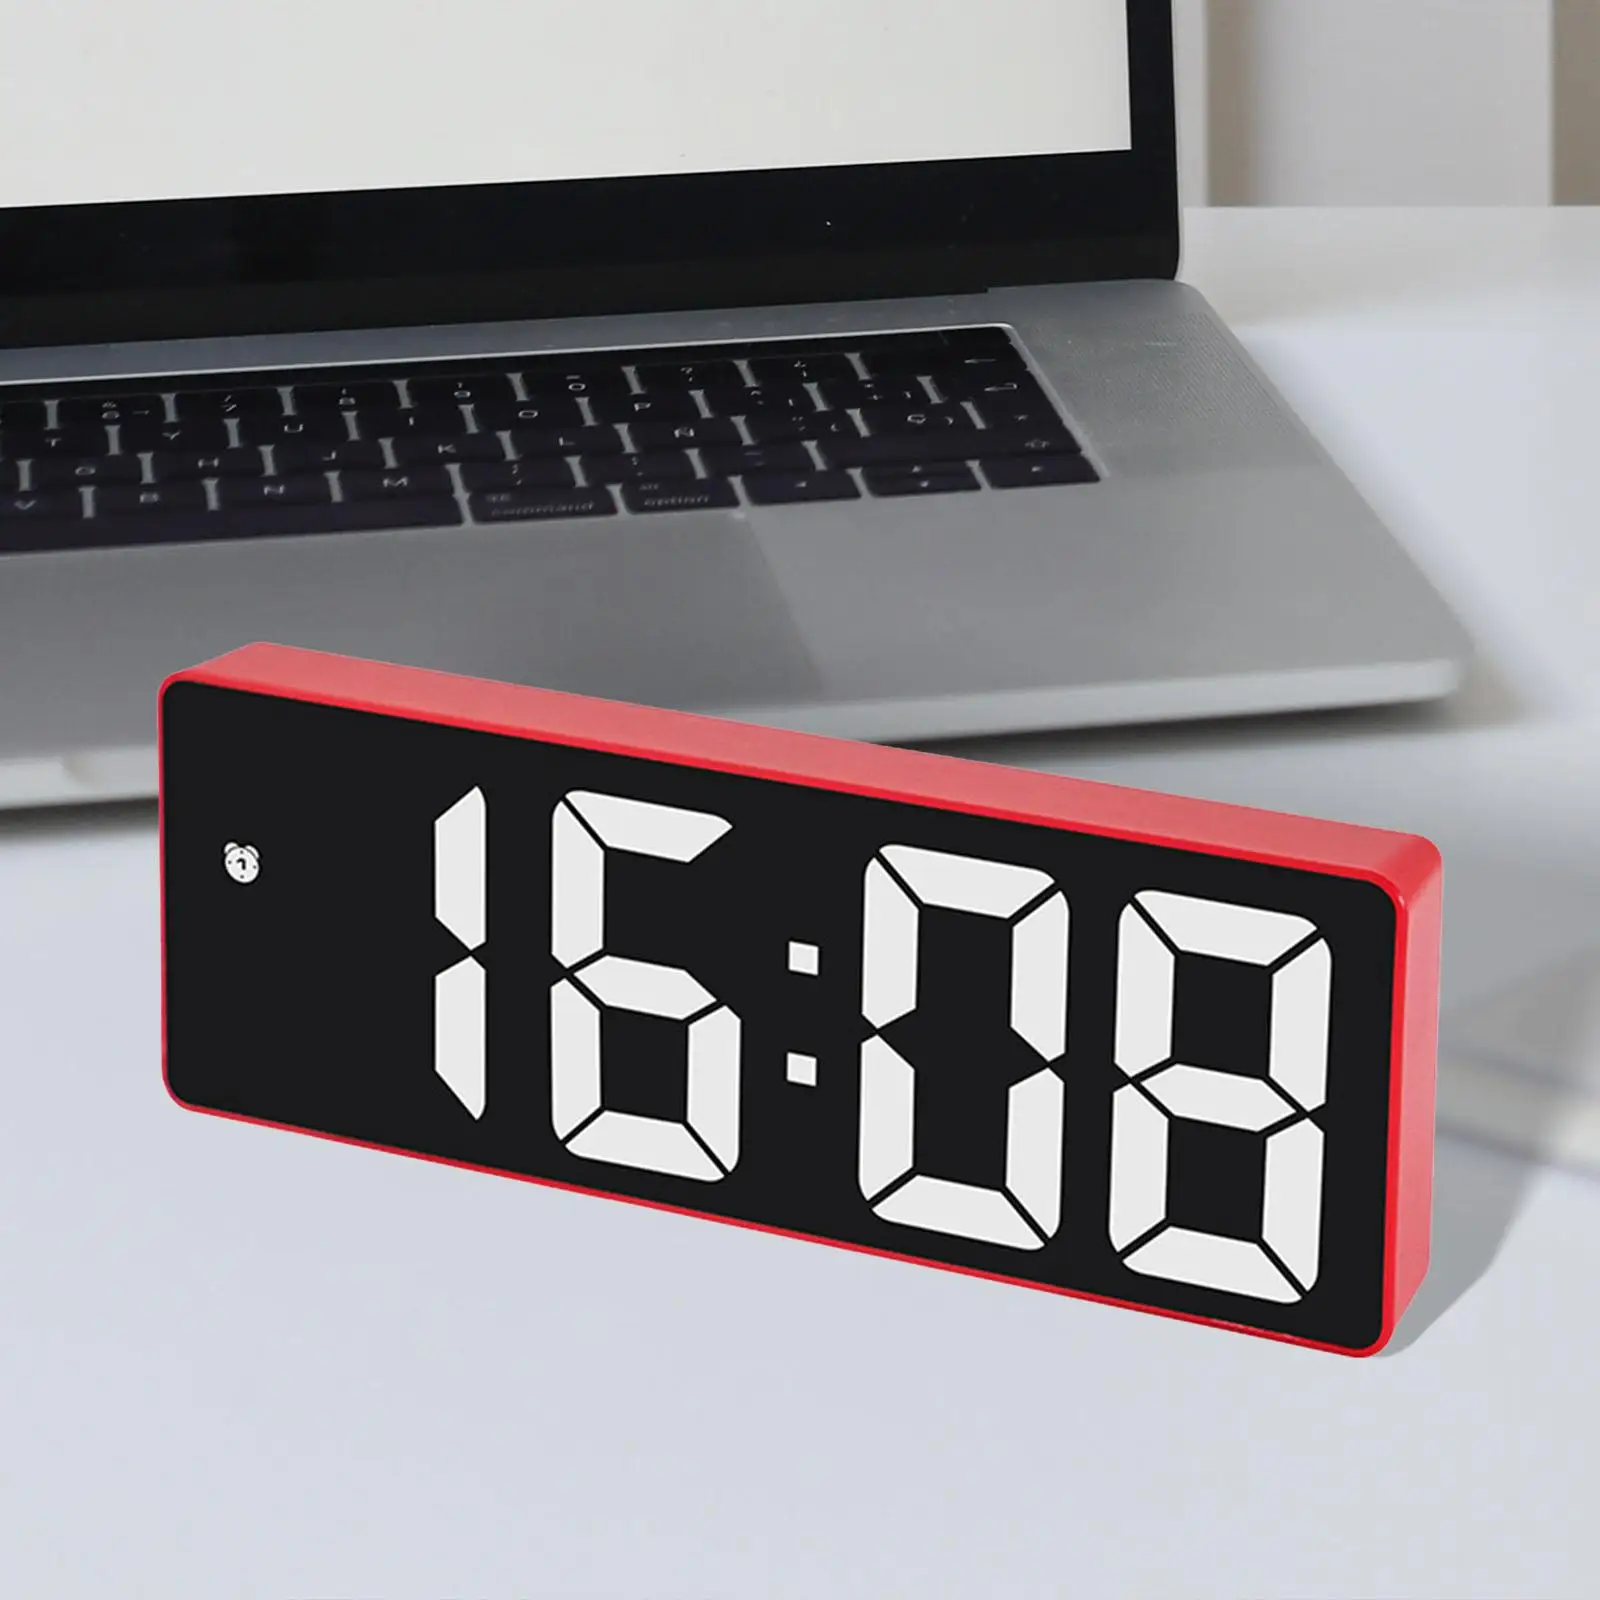 Digital Alarm Clock 6.3 inch Large Display 12/24H for Office Bedside Kids